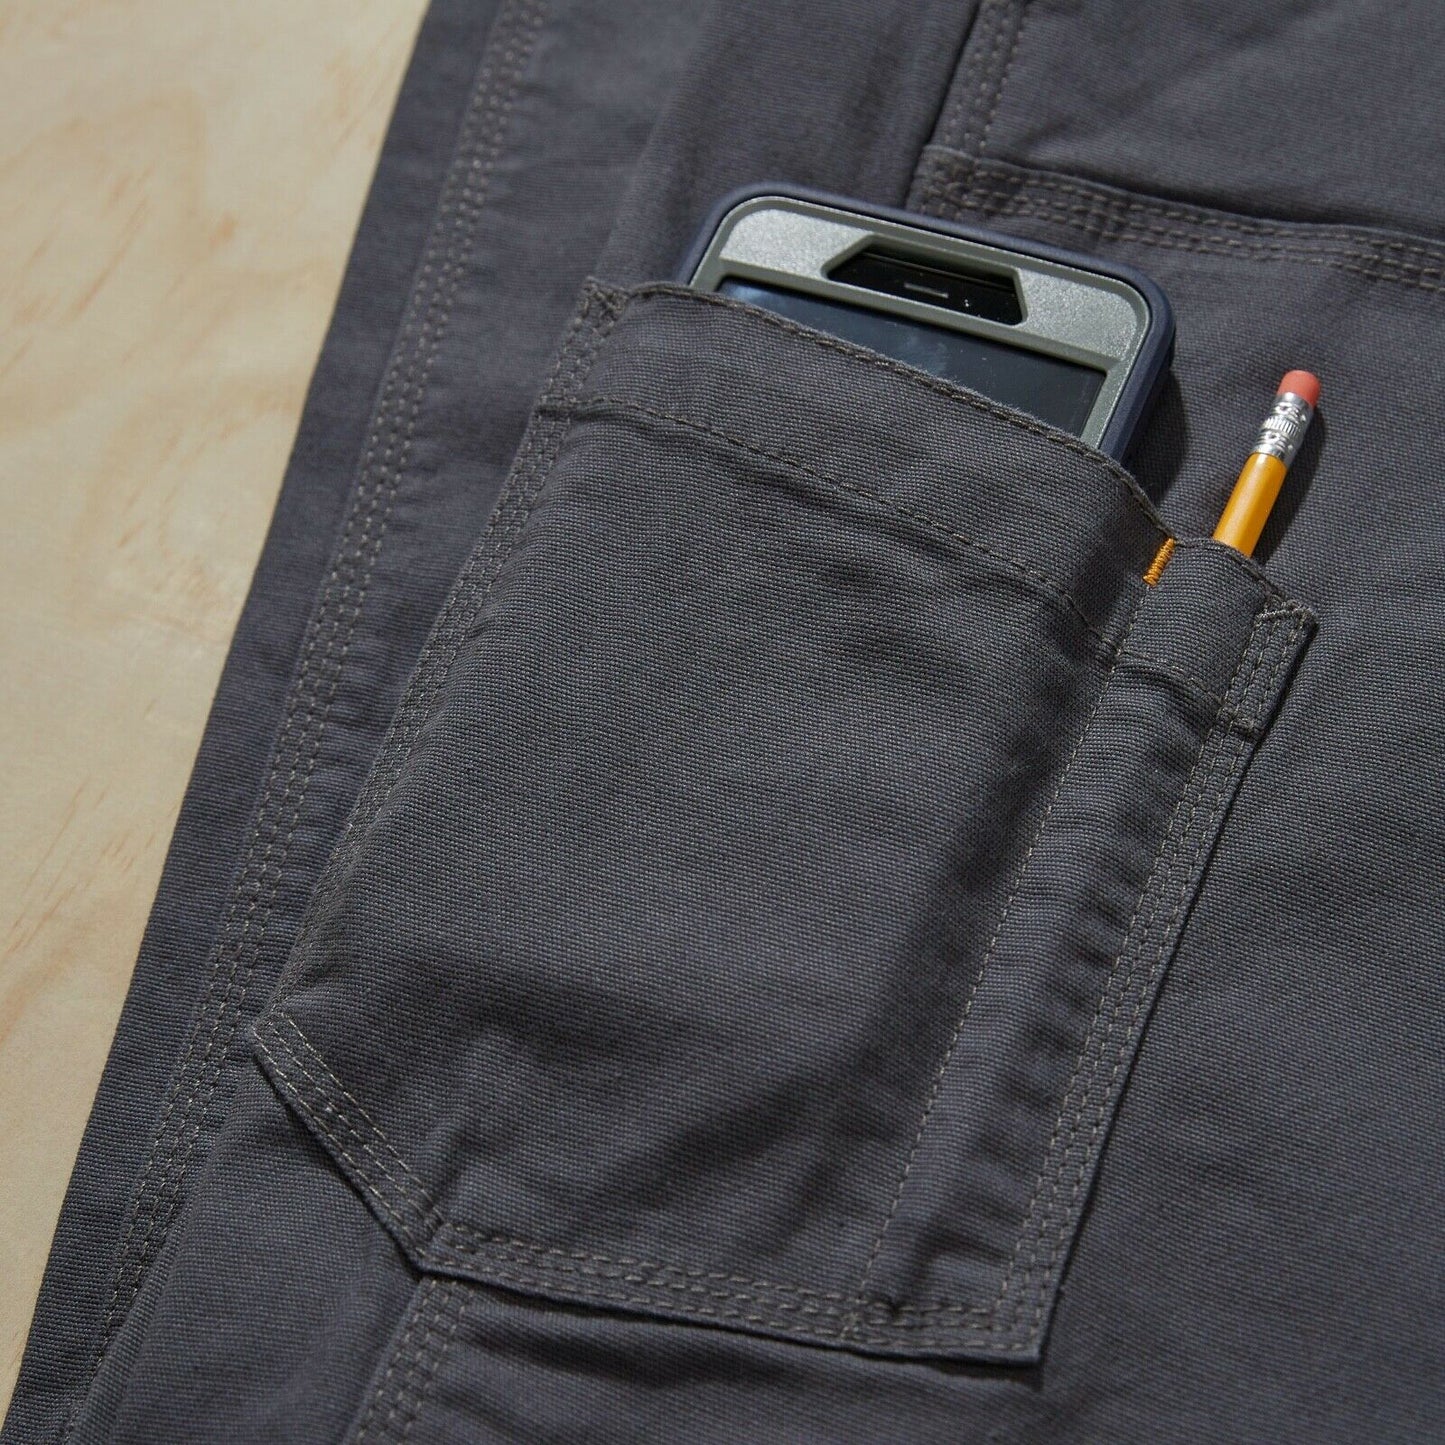 Ariat® Men's Rebar M4 Khaki Made Tough DuraStretch Work Pants 10030239